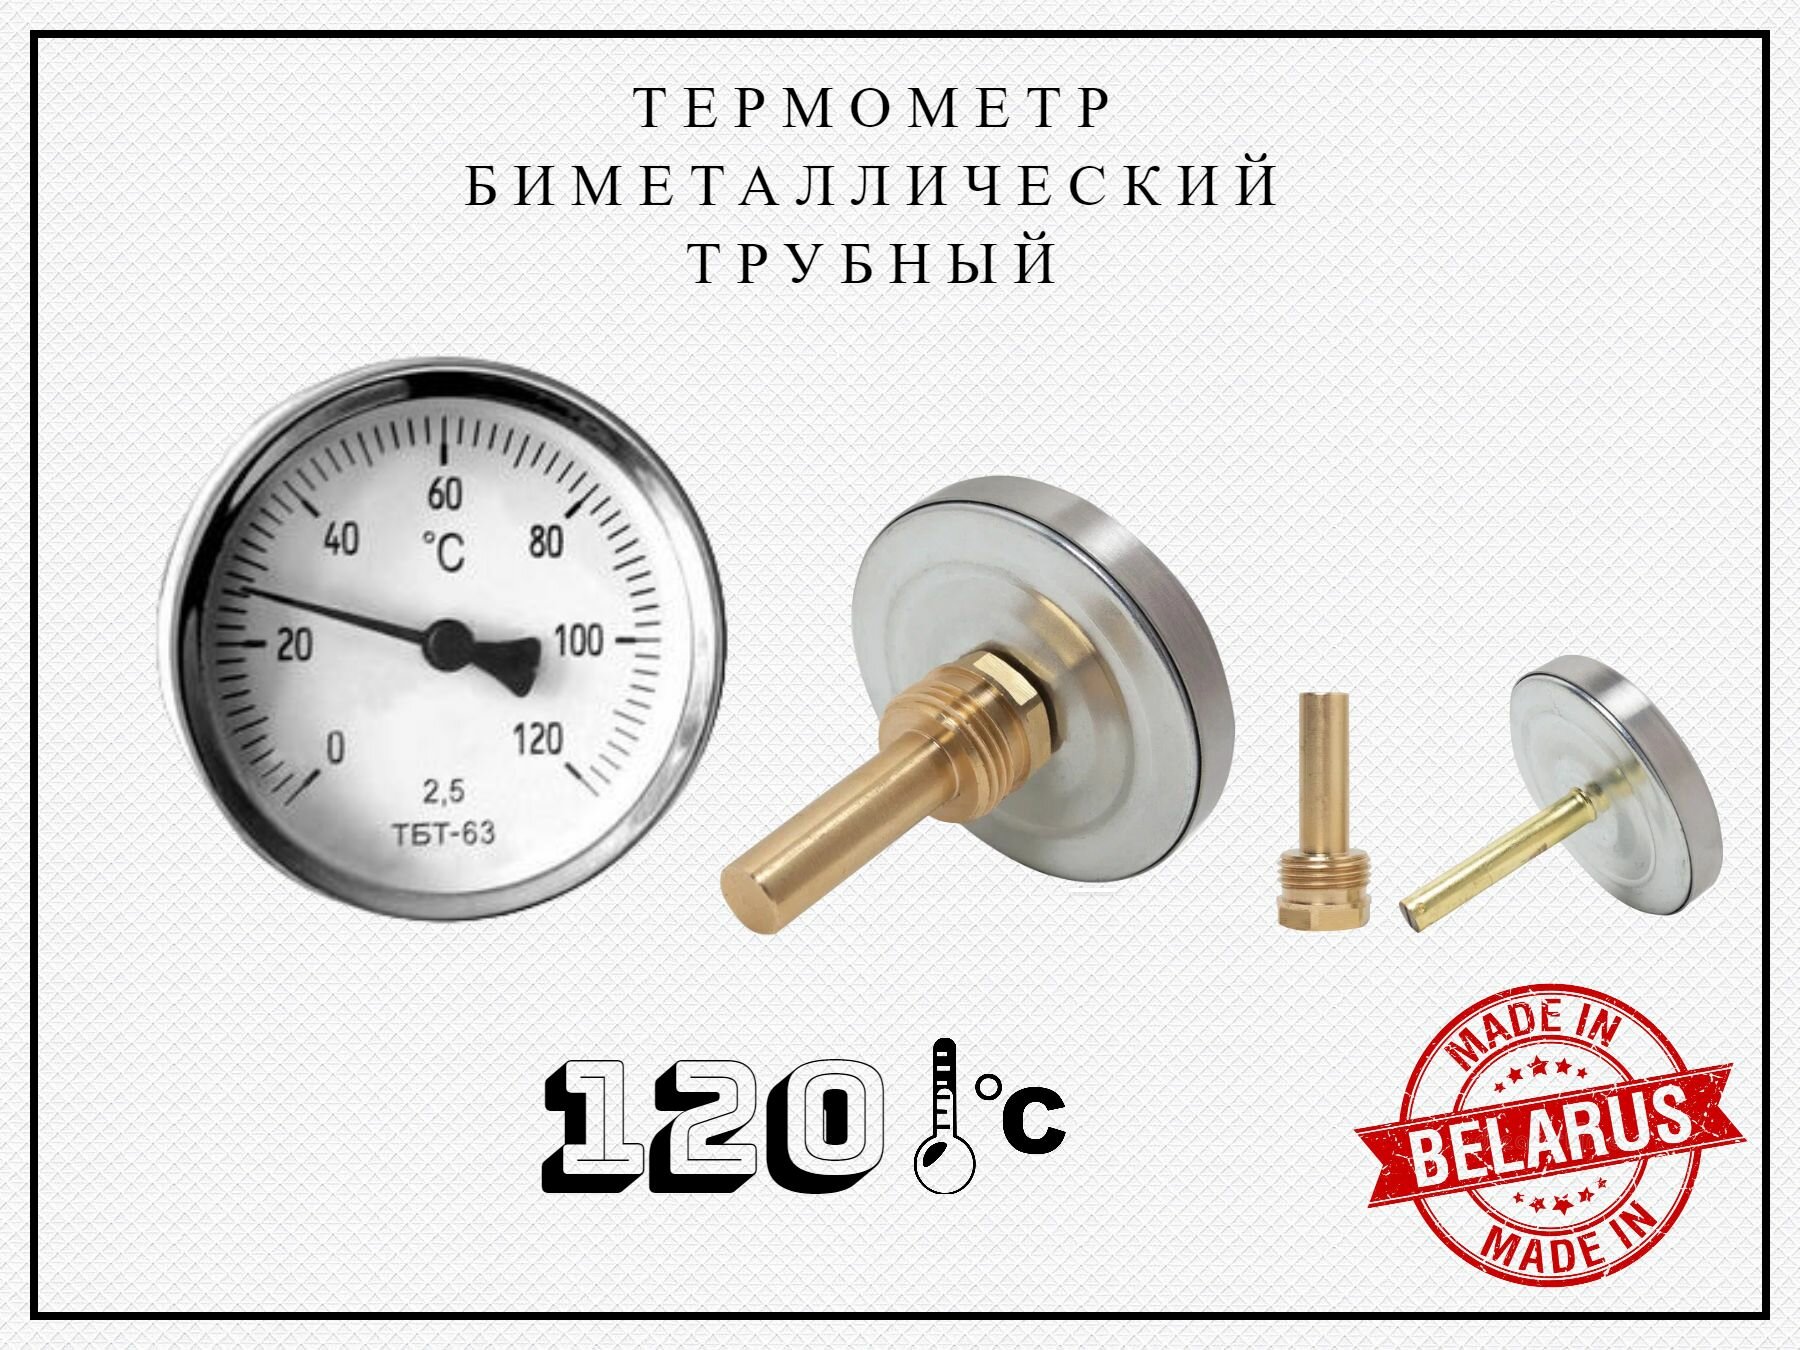 ТБТ-63 термометр биметаллический 120 градусов L-60mm